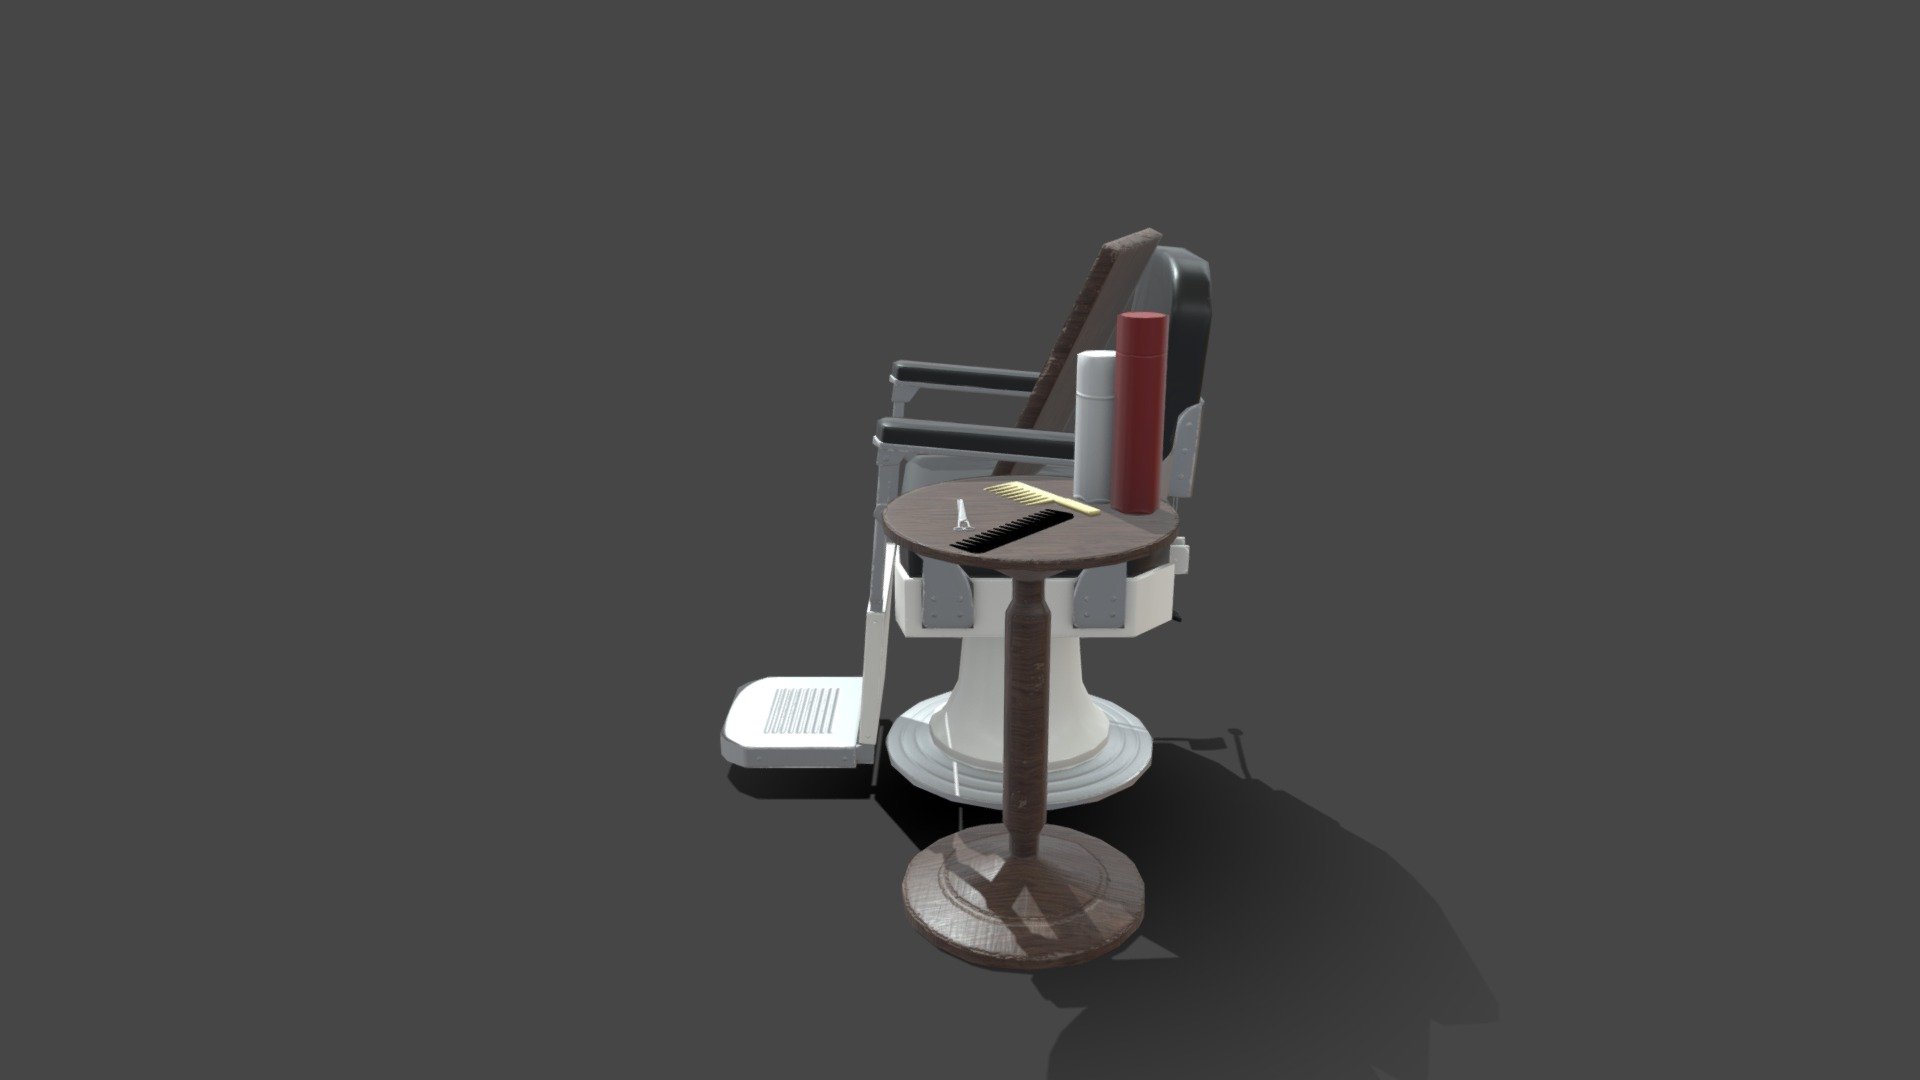 Barber Nike Chair - 3D model by sebi.contu 3d model